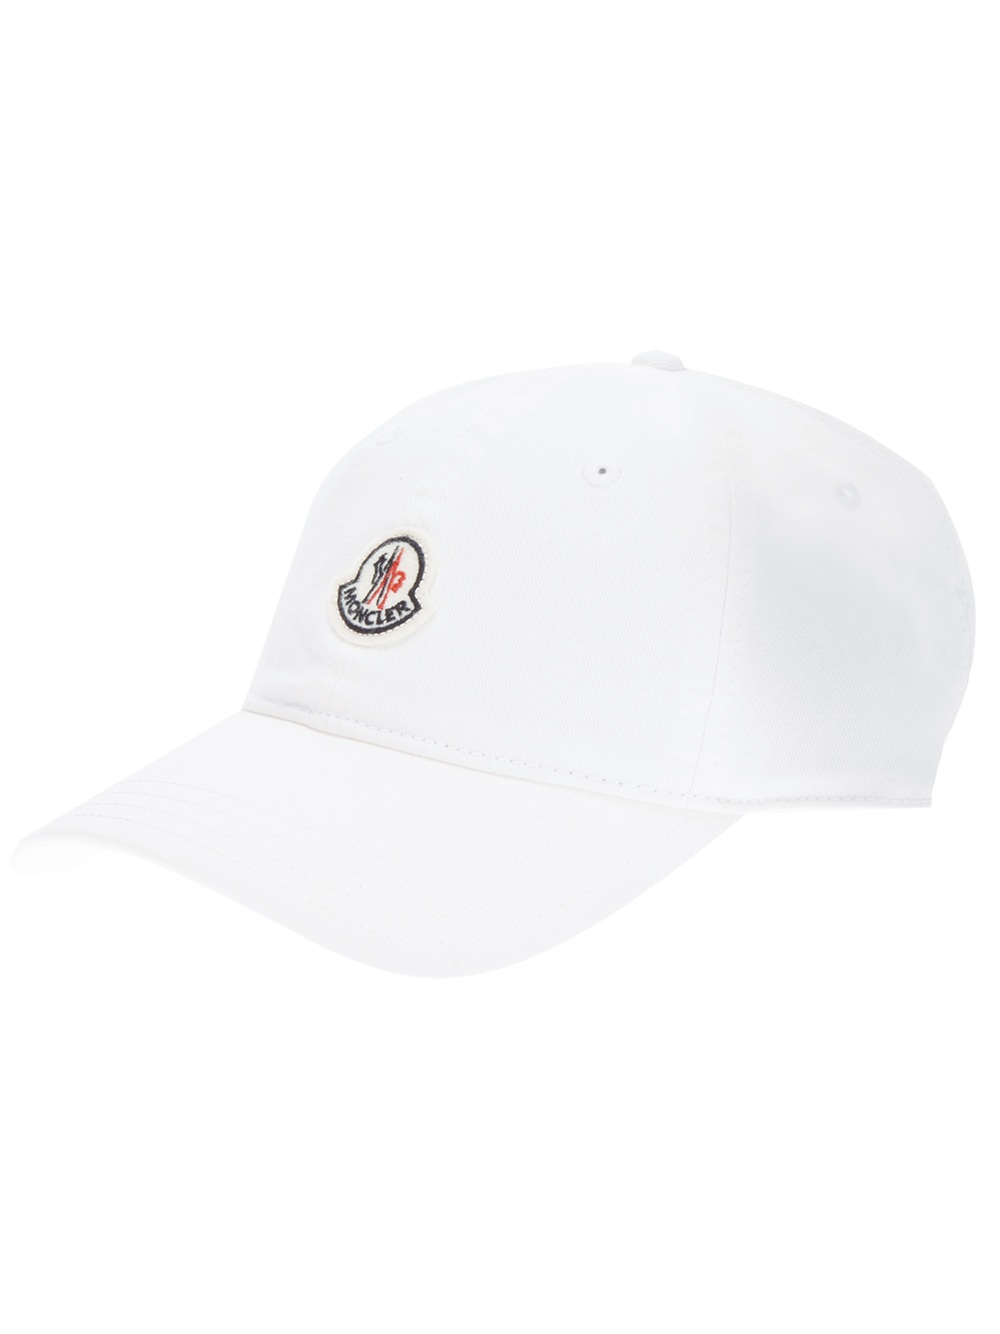 moncler white cap